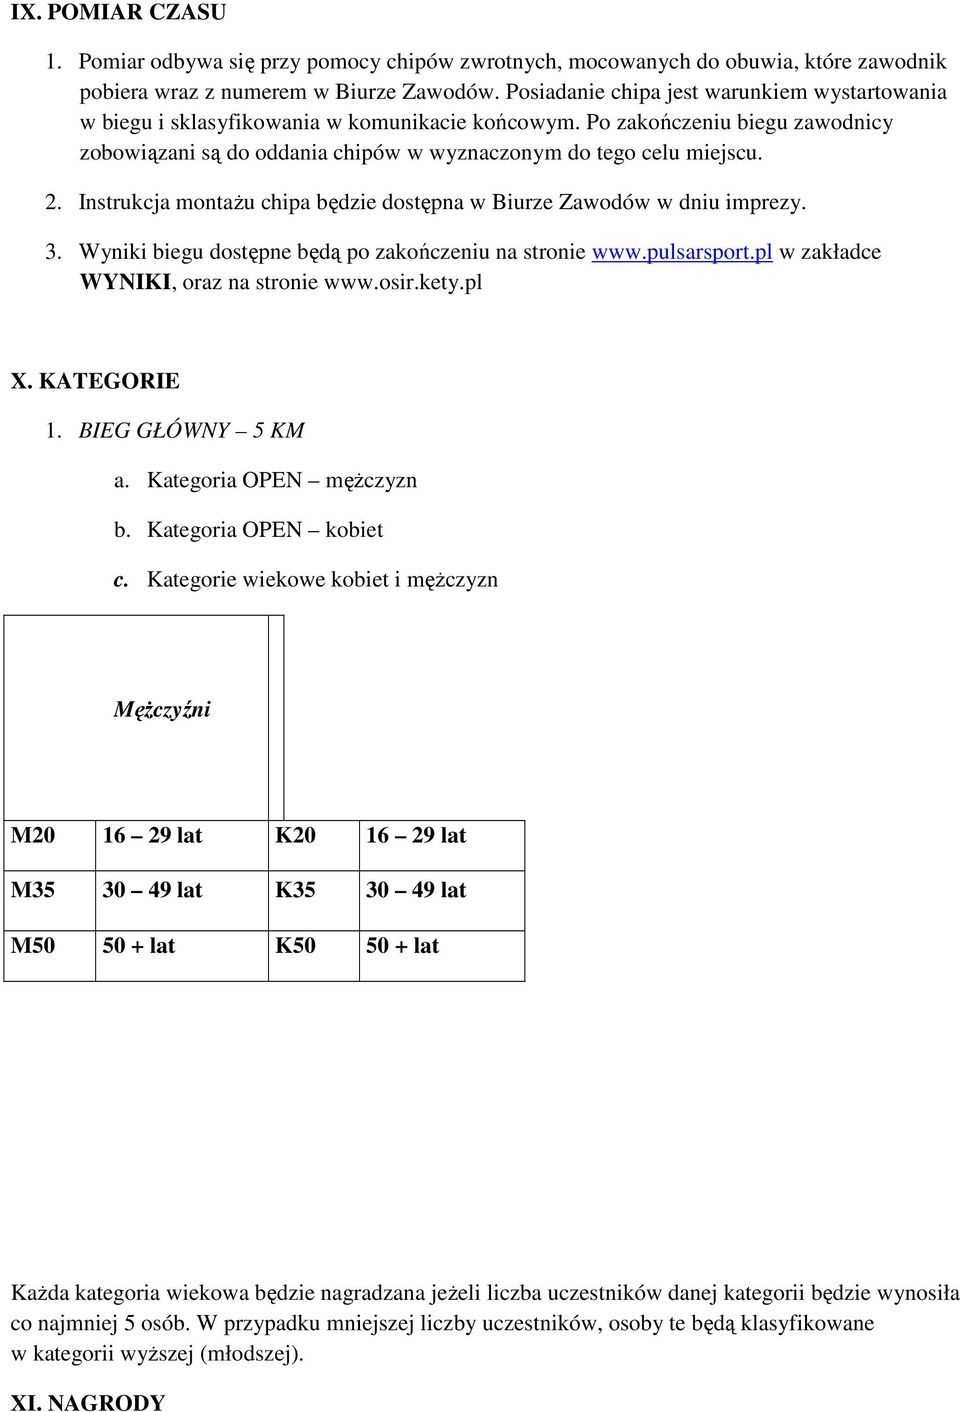 Instrukcja montażu chipa będzie dostępna w Biurze Zawodów w dniu imprezy. 3. Wyniki biegu dostępne będą po zakończeniu na stronie www.pulsarsport.pl w zakładce WYNIKI, oraz na stronie www.osir.kety.